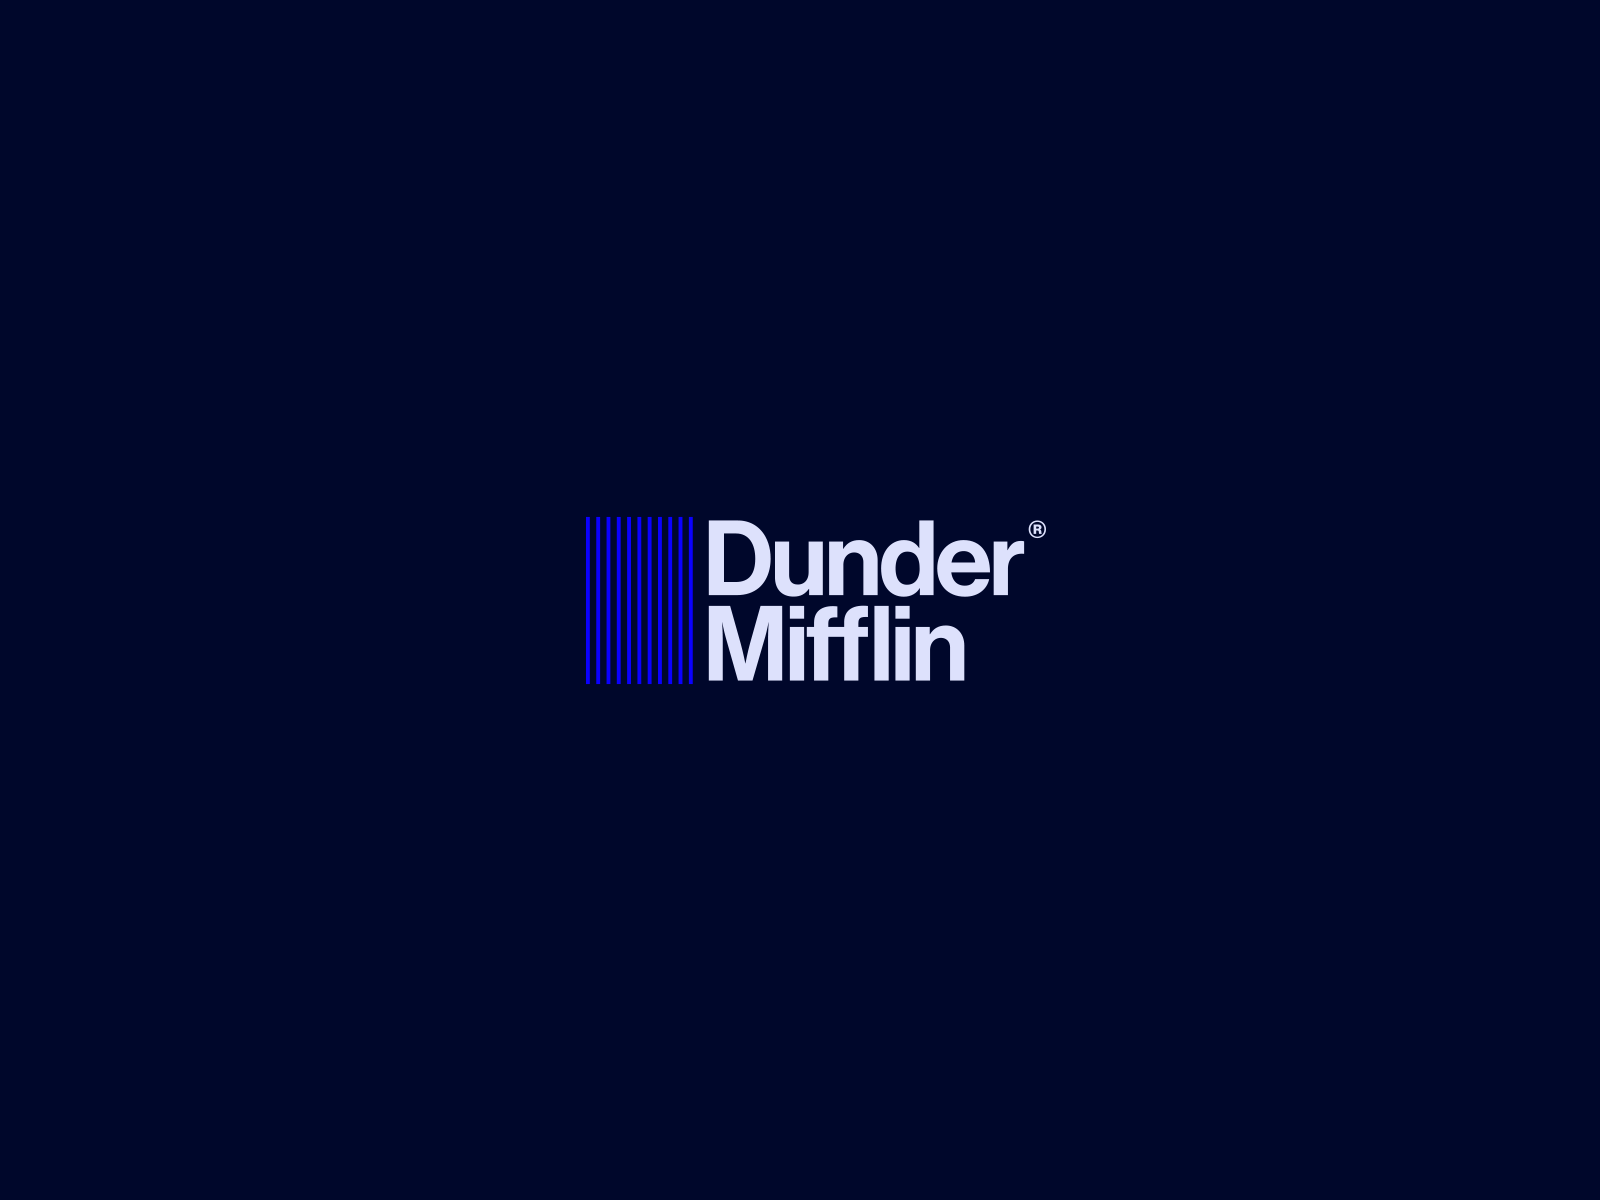 I tried to do the logo redesign for dunder mifflin : r/DunderMifflin